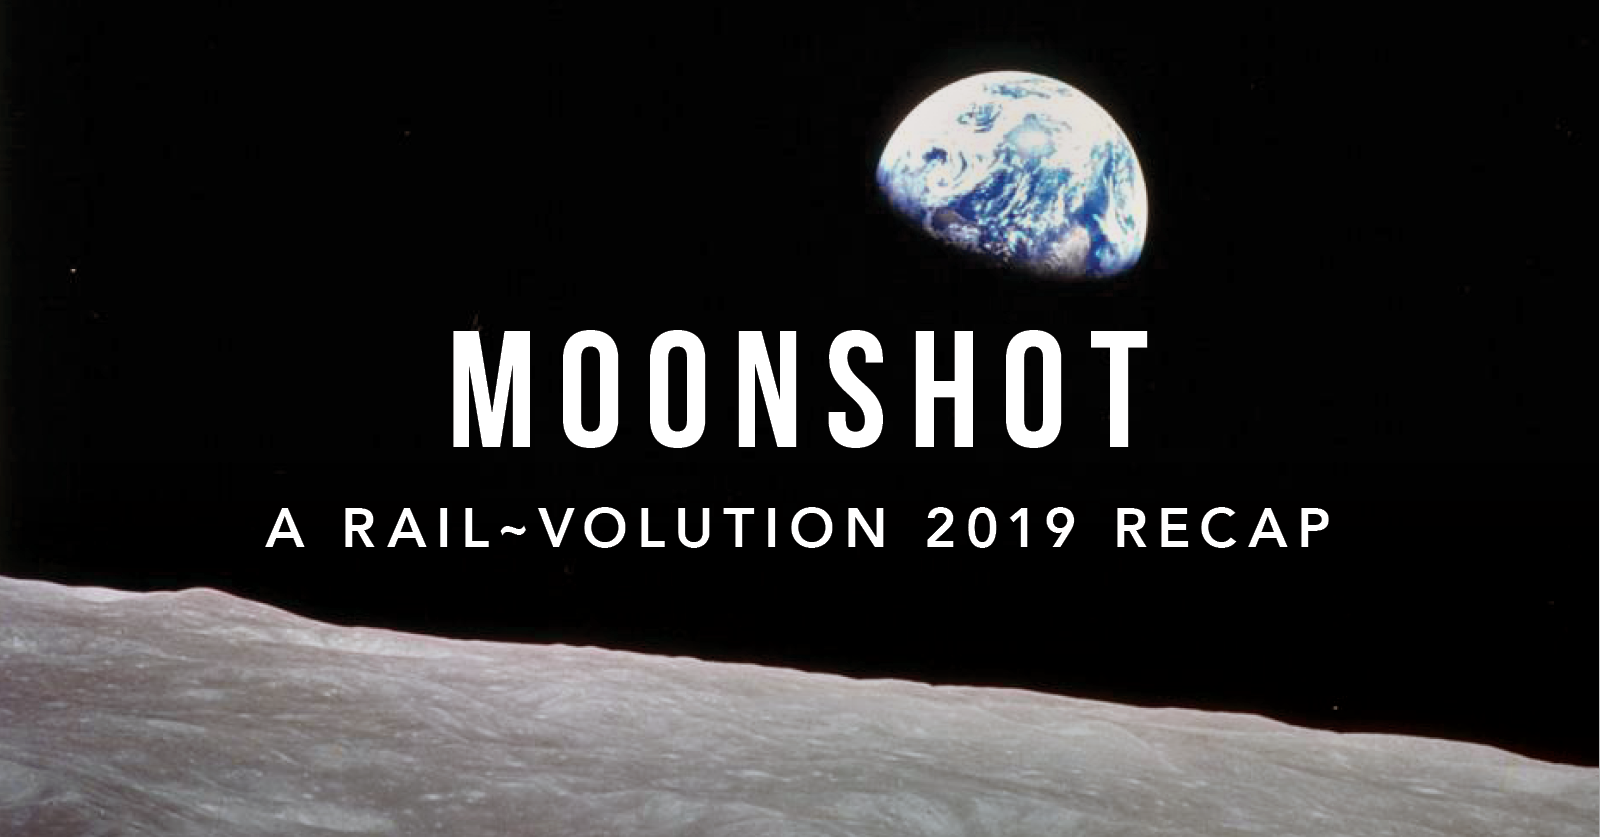 Moonshot: a Rail-Volution 2019 recap